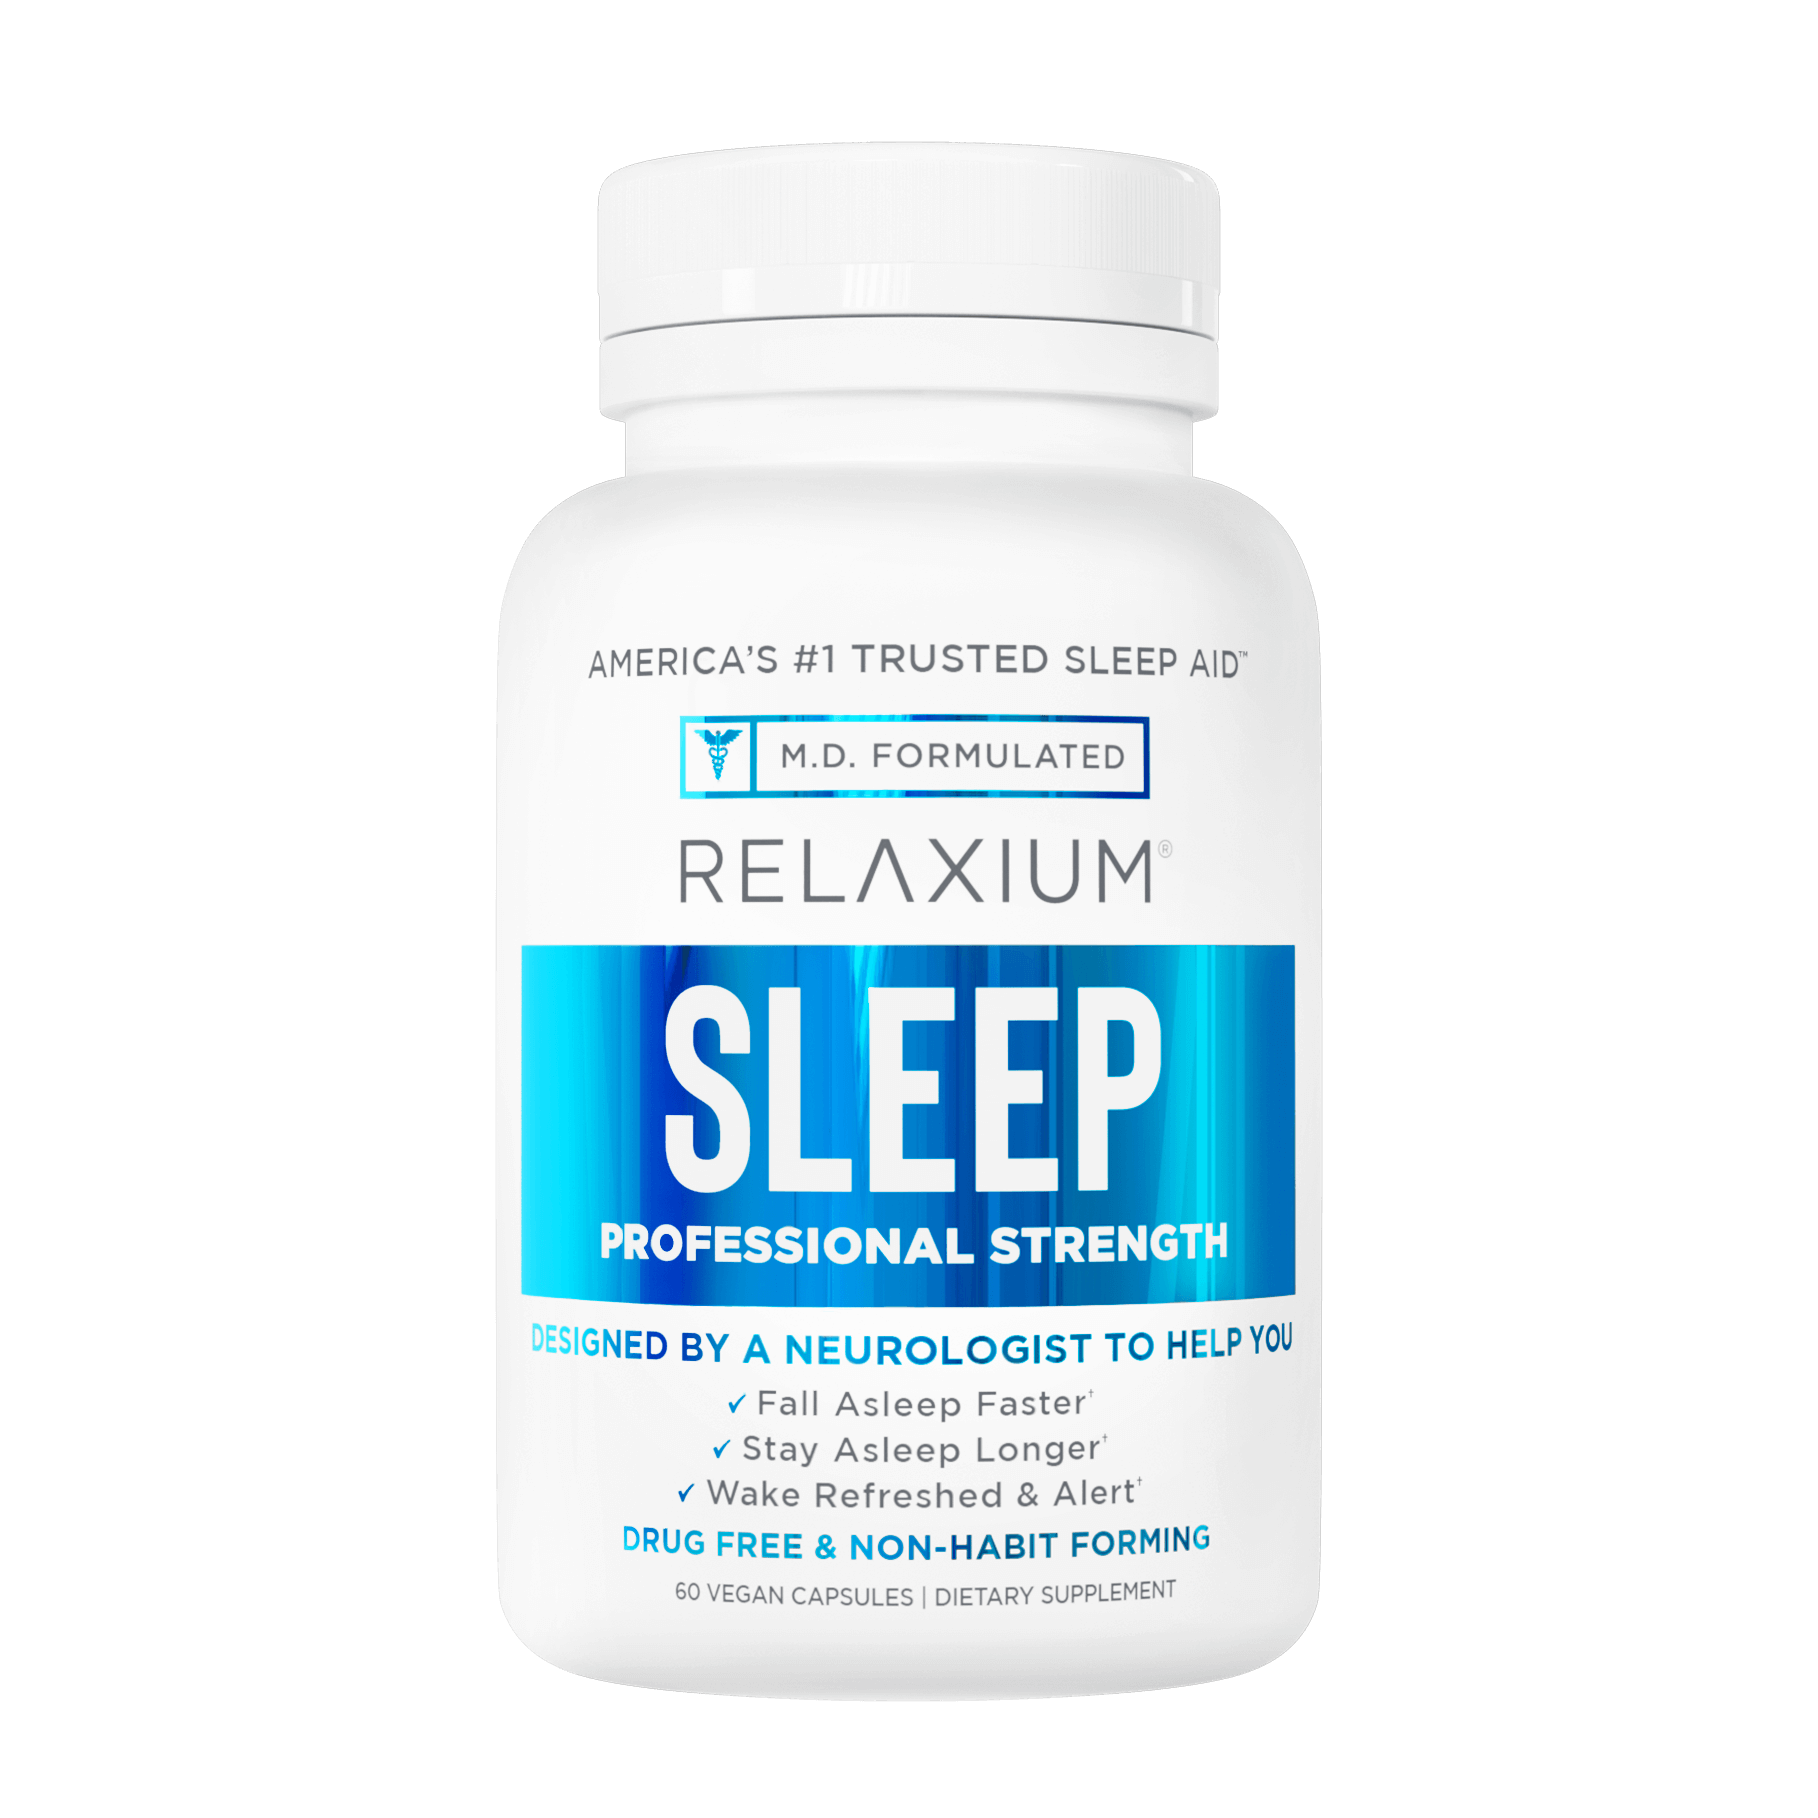 RELAXIUM® Sleep Bottle